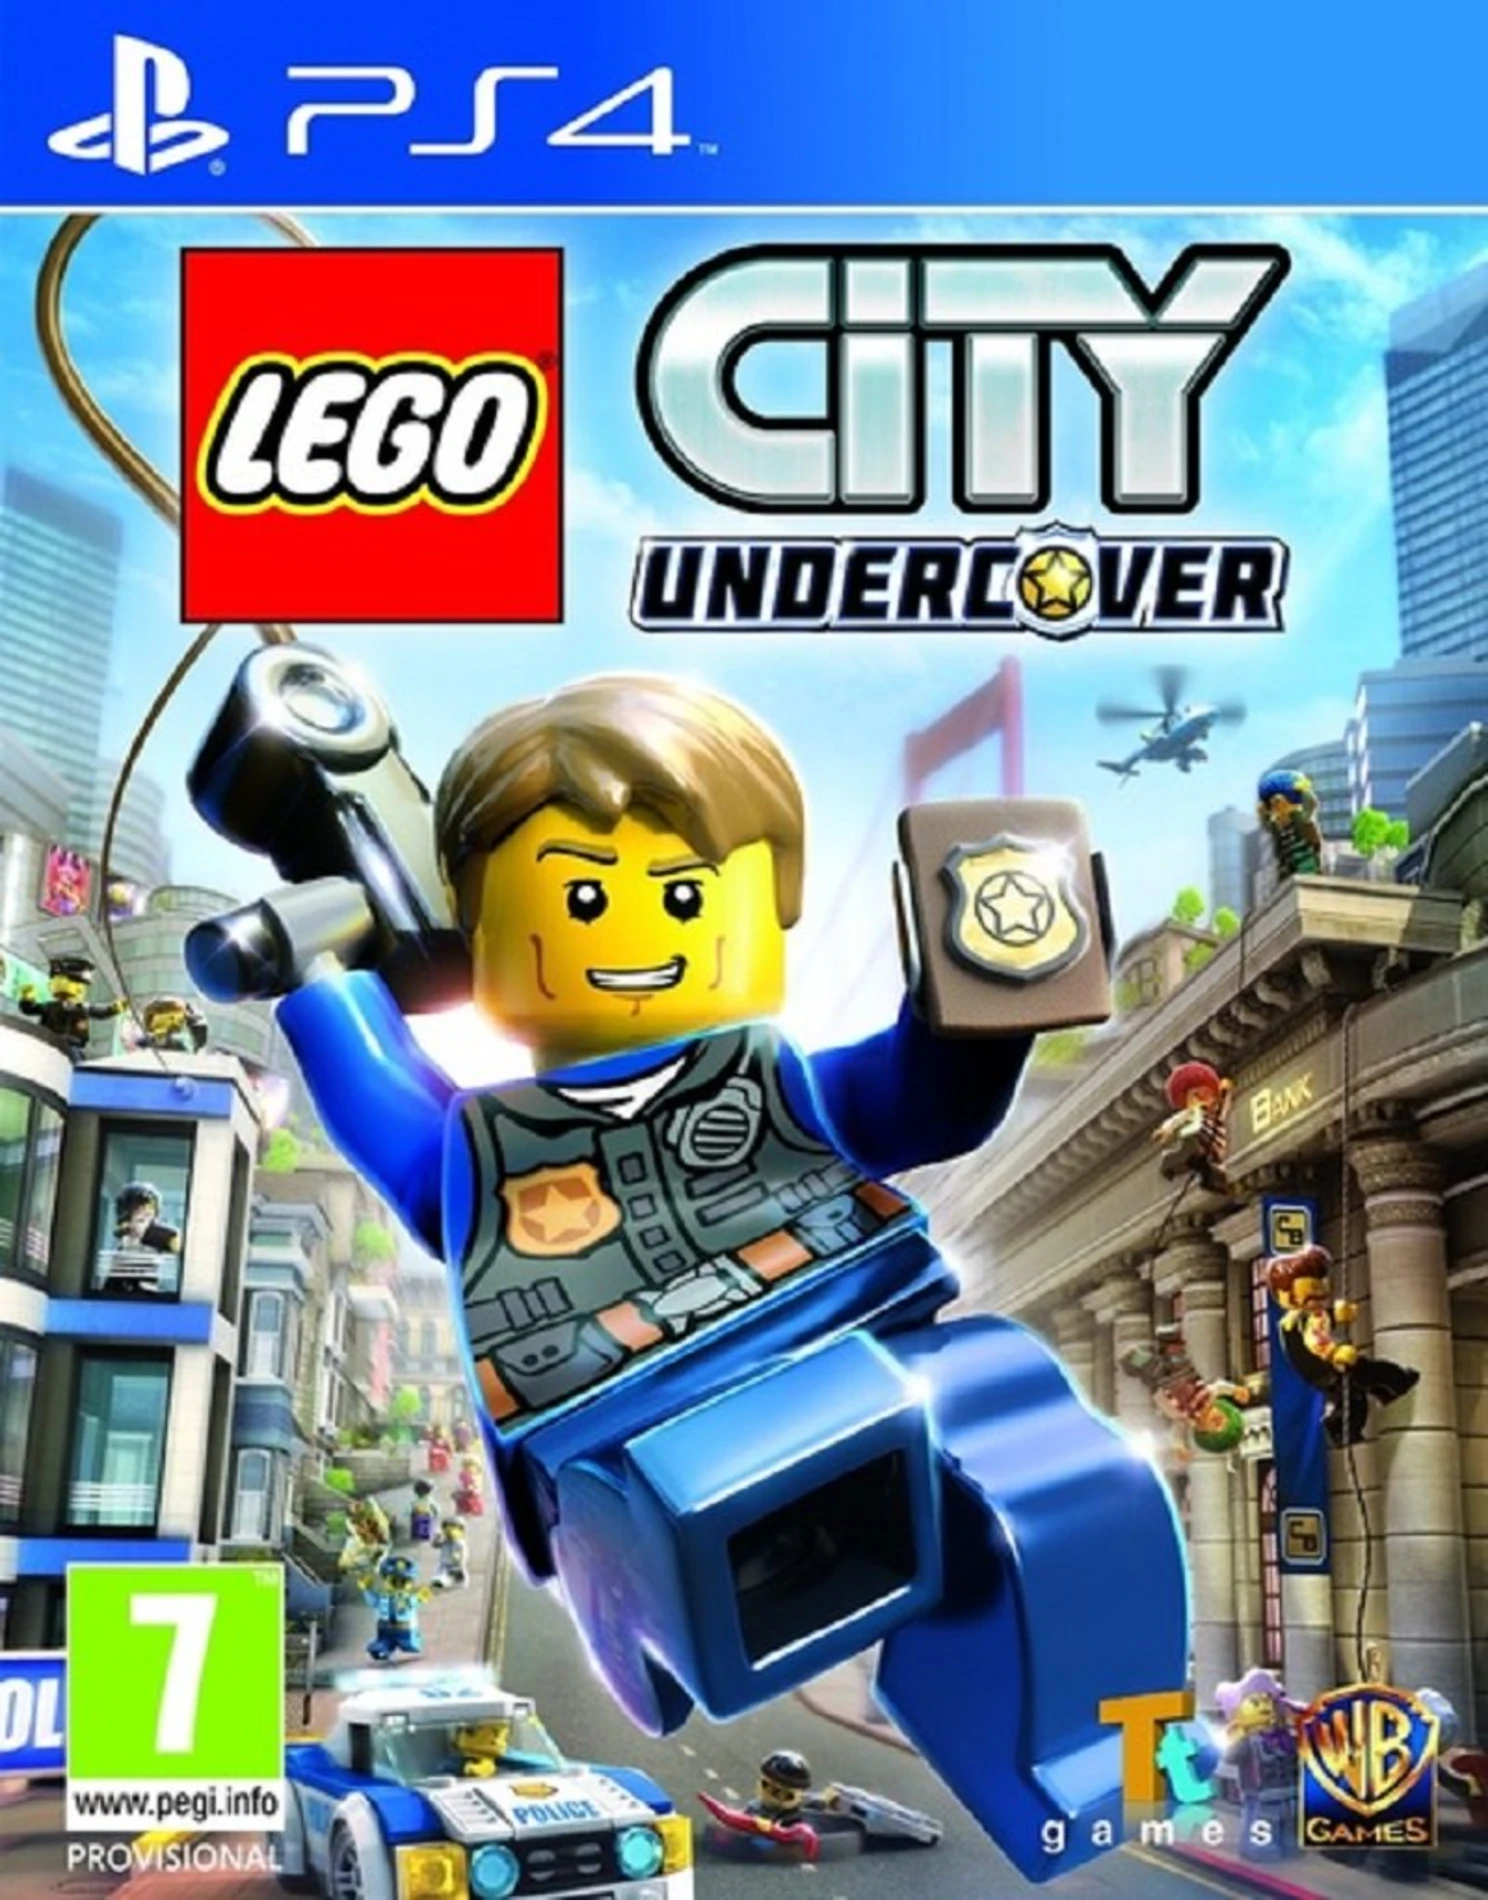 [2.EL] Lego City Undercover - Ps4 Oyun